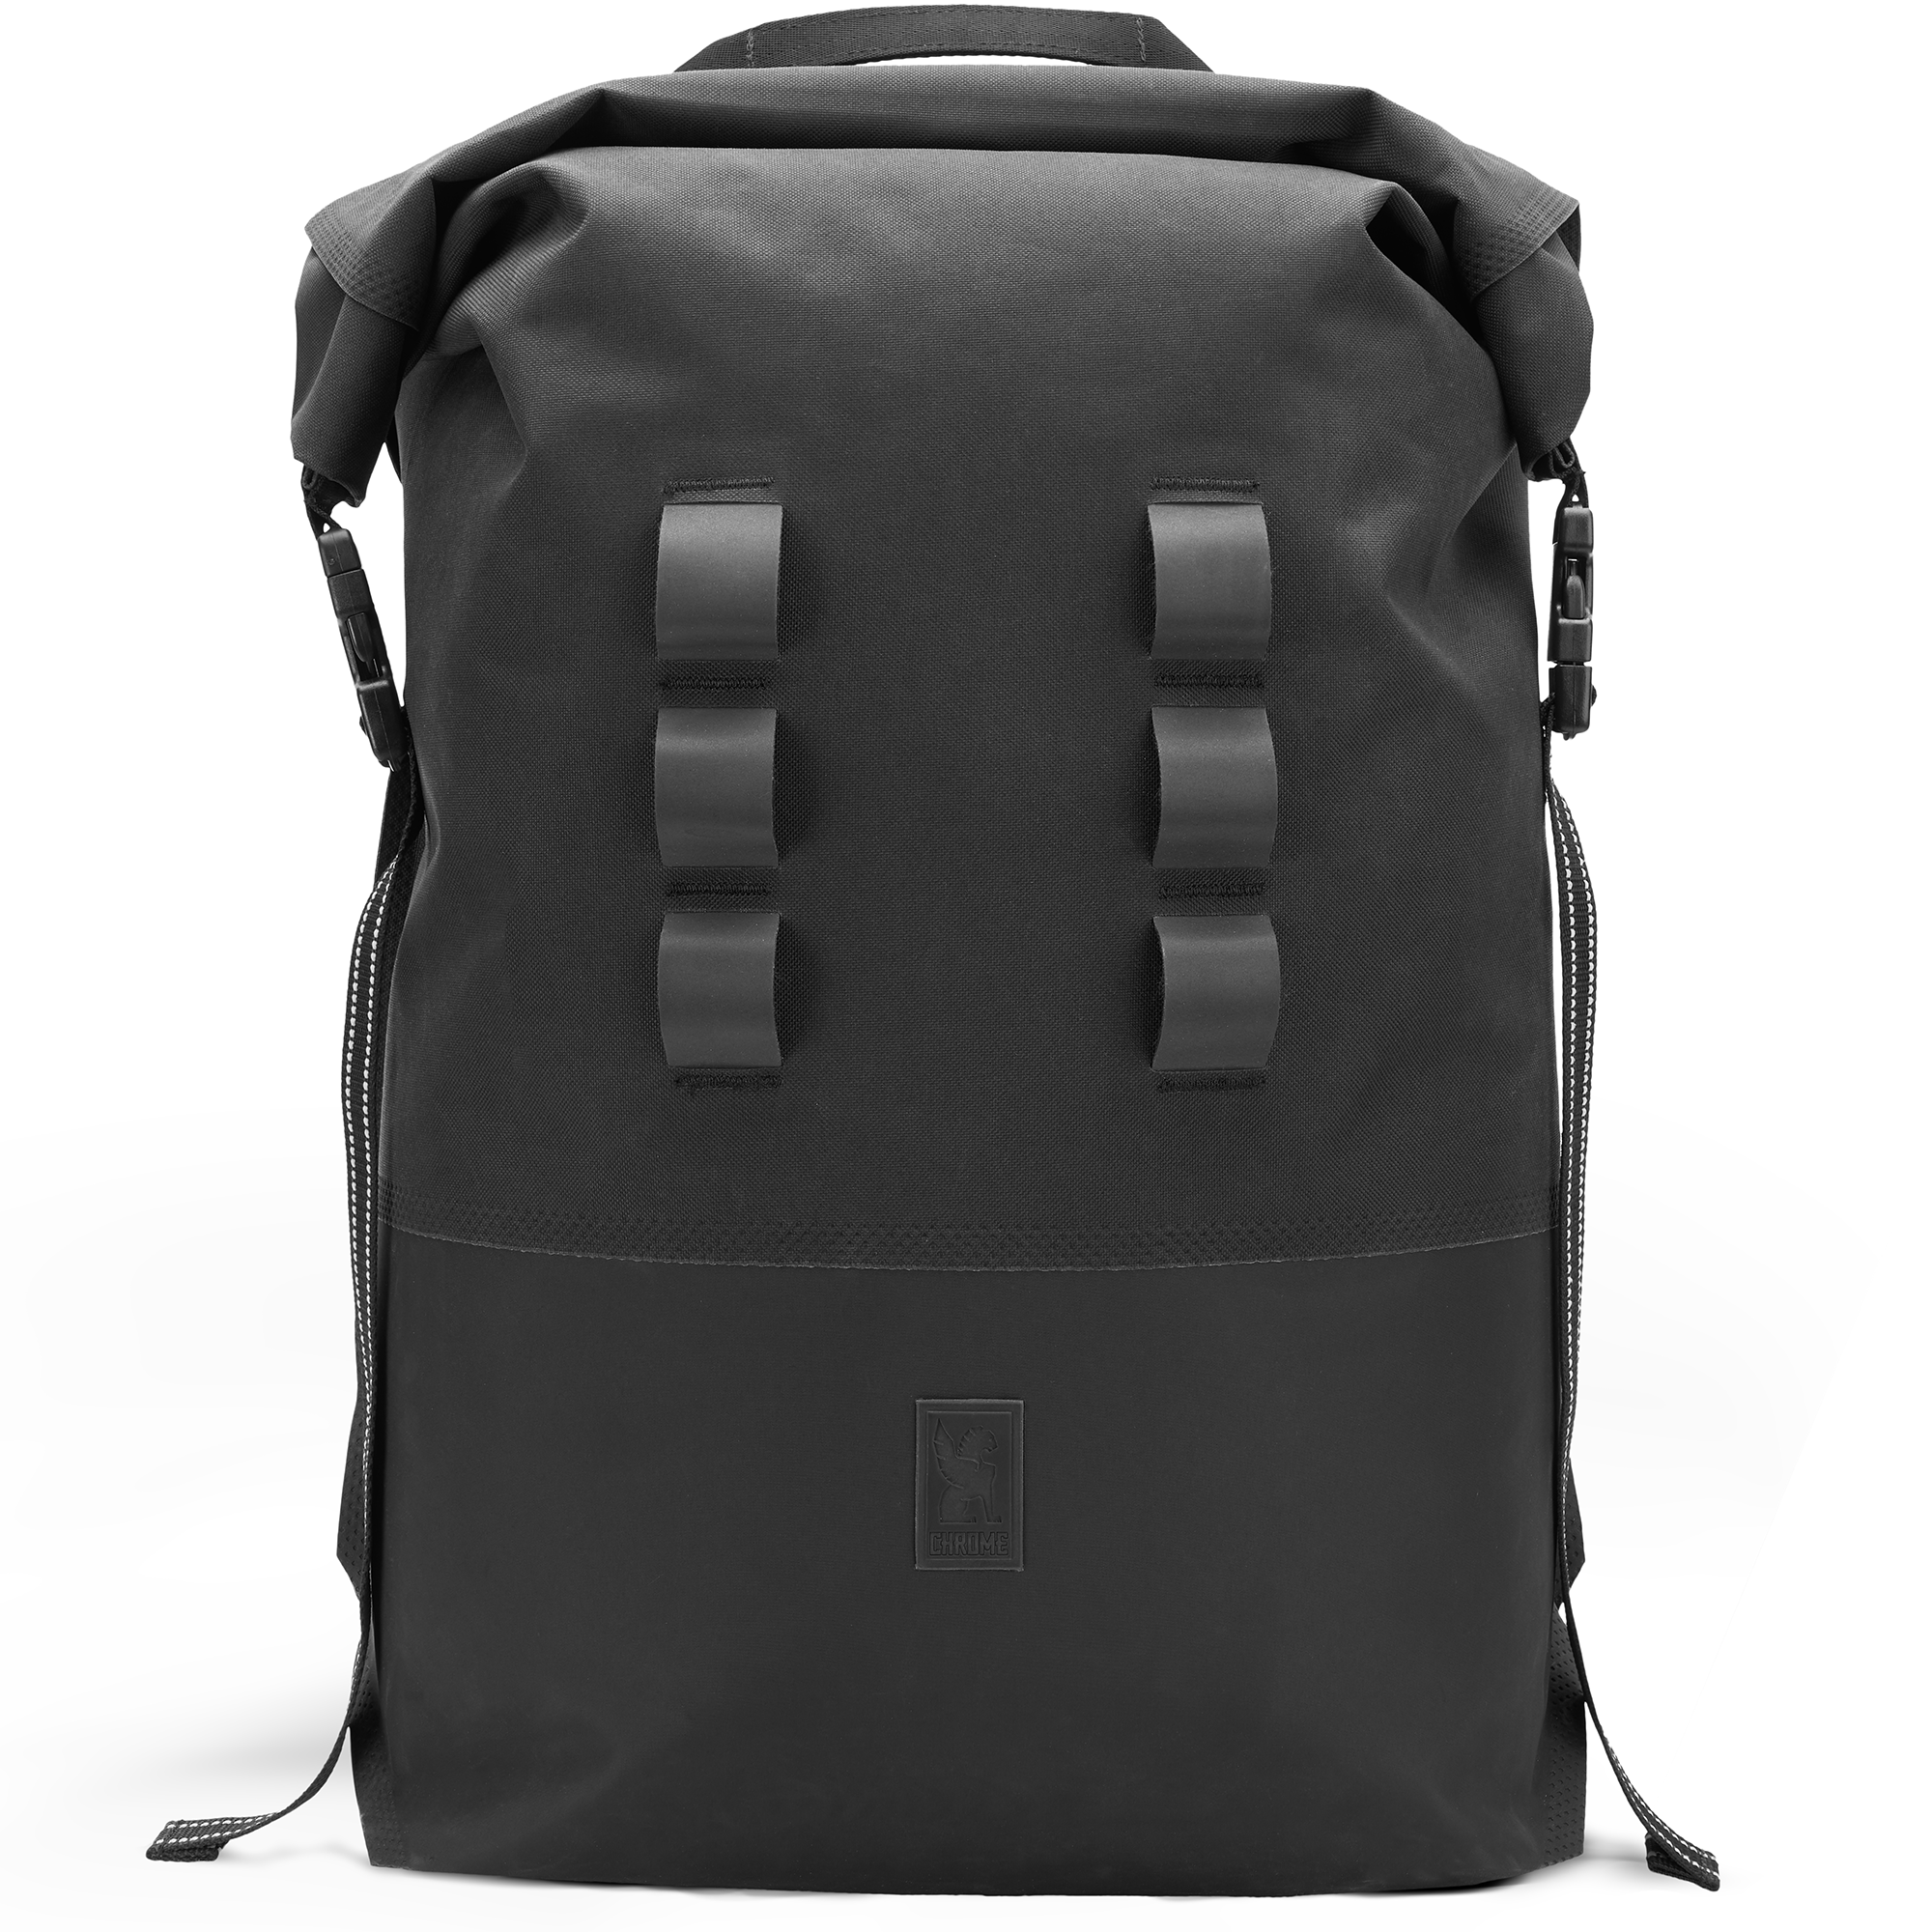 Waterproof 30L rolltop backpack in black reflective loops #color_black